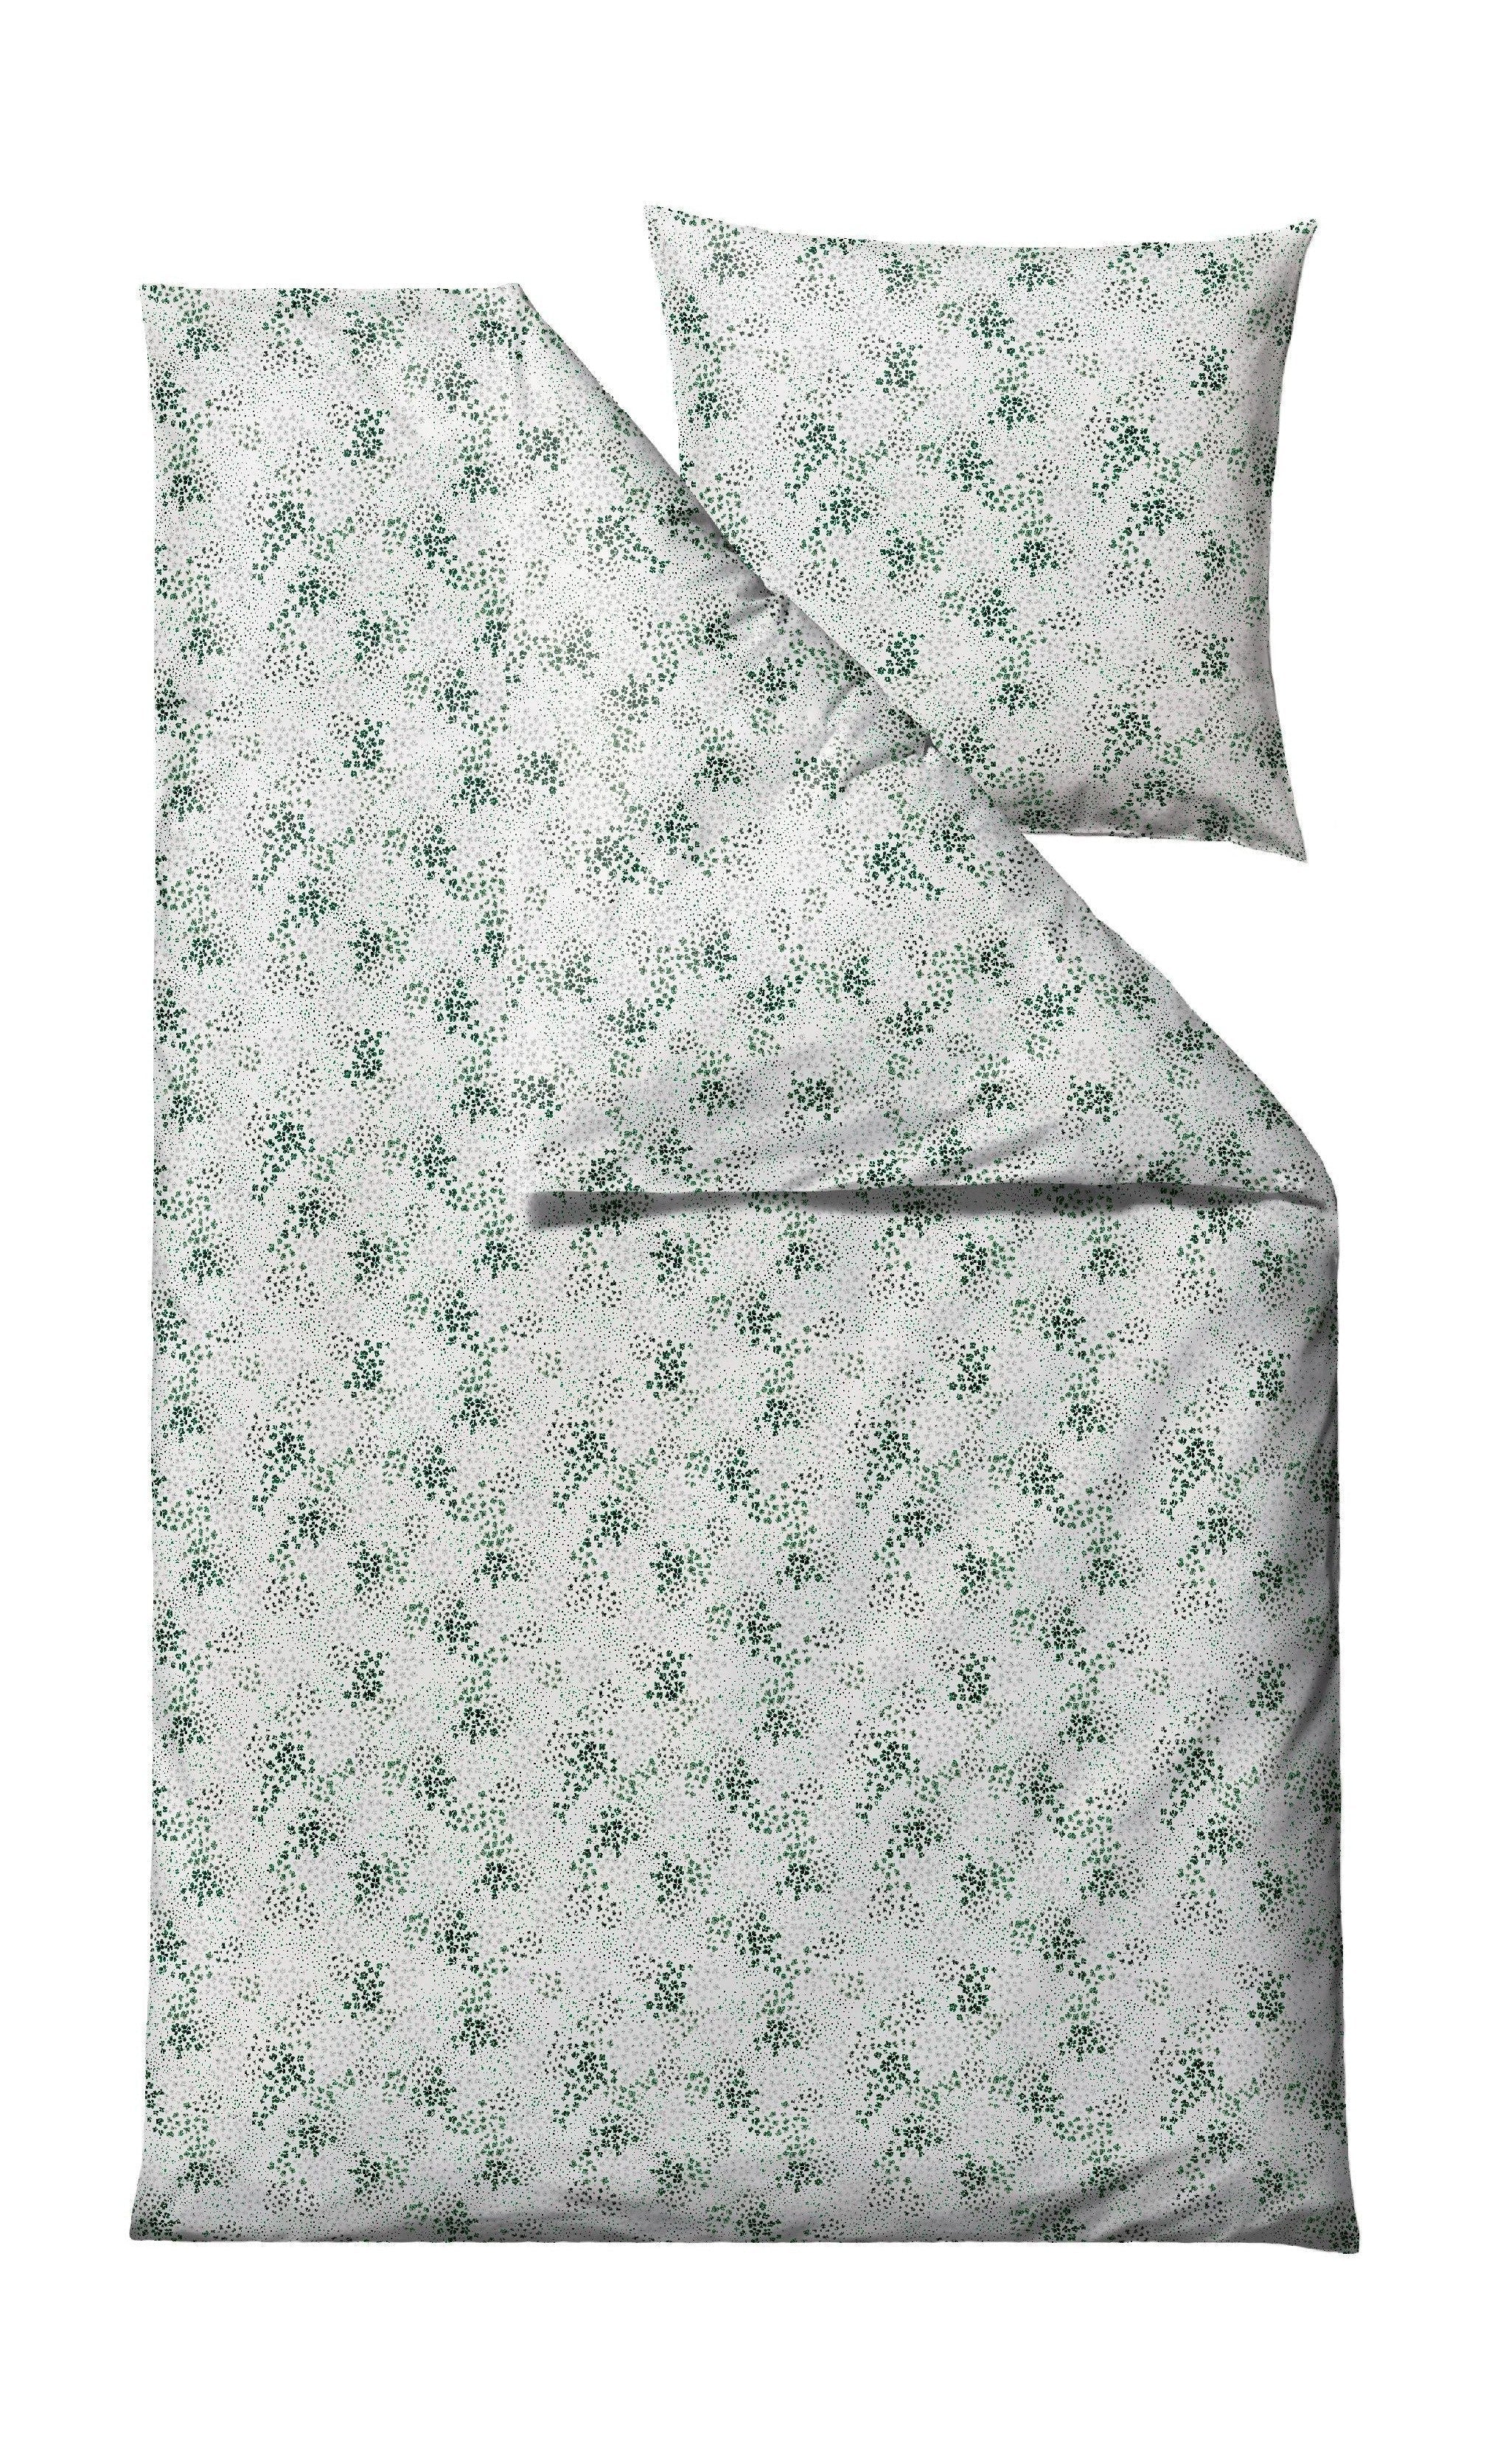 Södahl Viola -Bett -Leinen 140 x 200 cm, grün